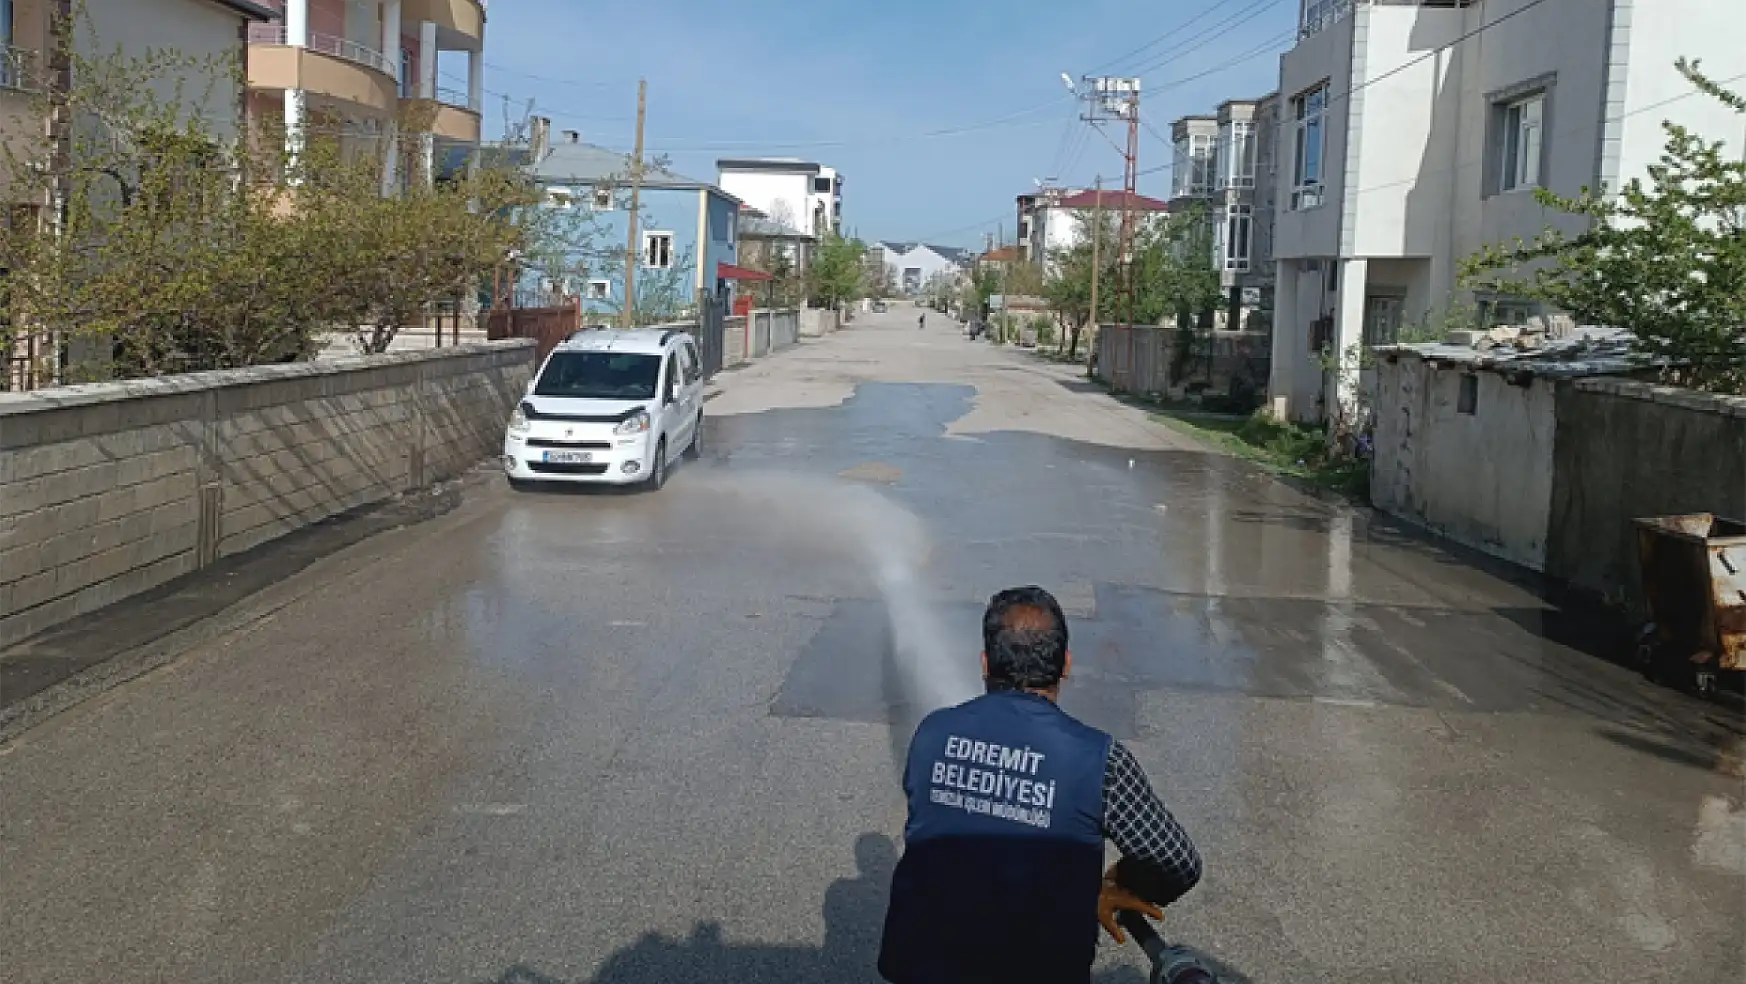 Edremit Belediyesi'nin temizlik çalışmaları sürüyor